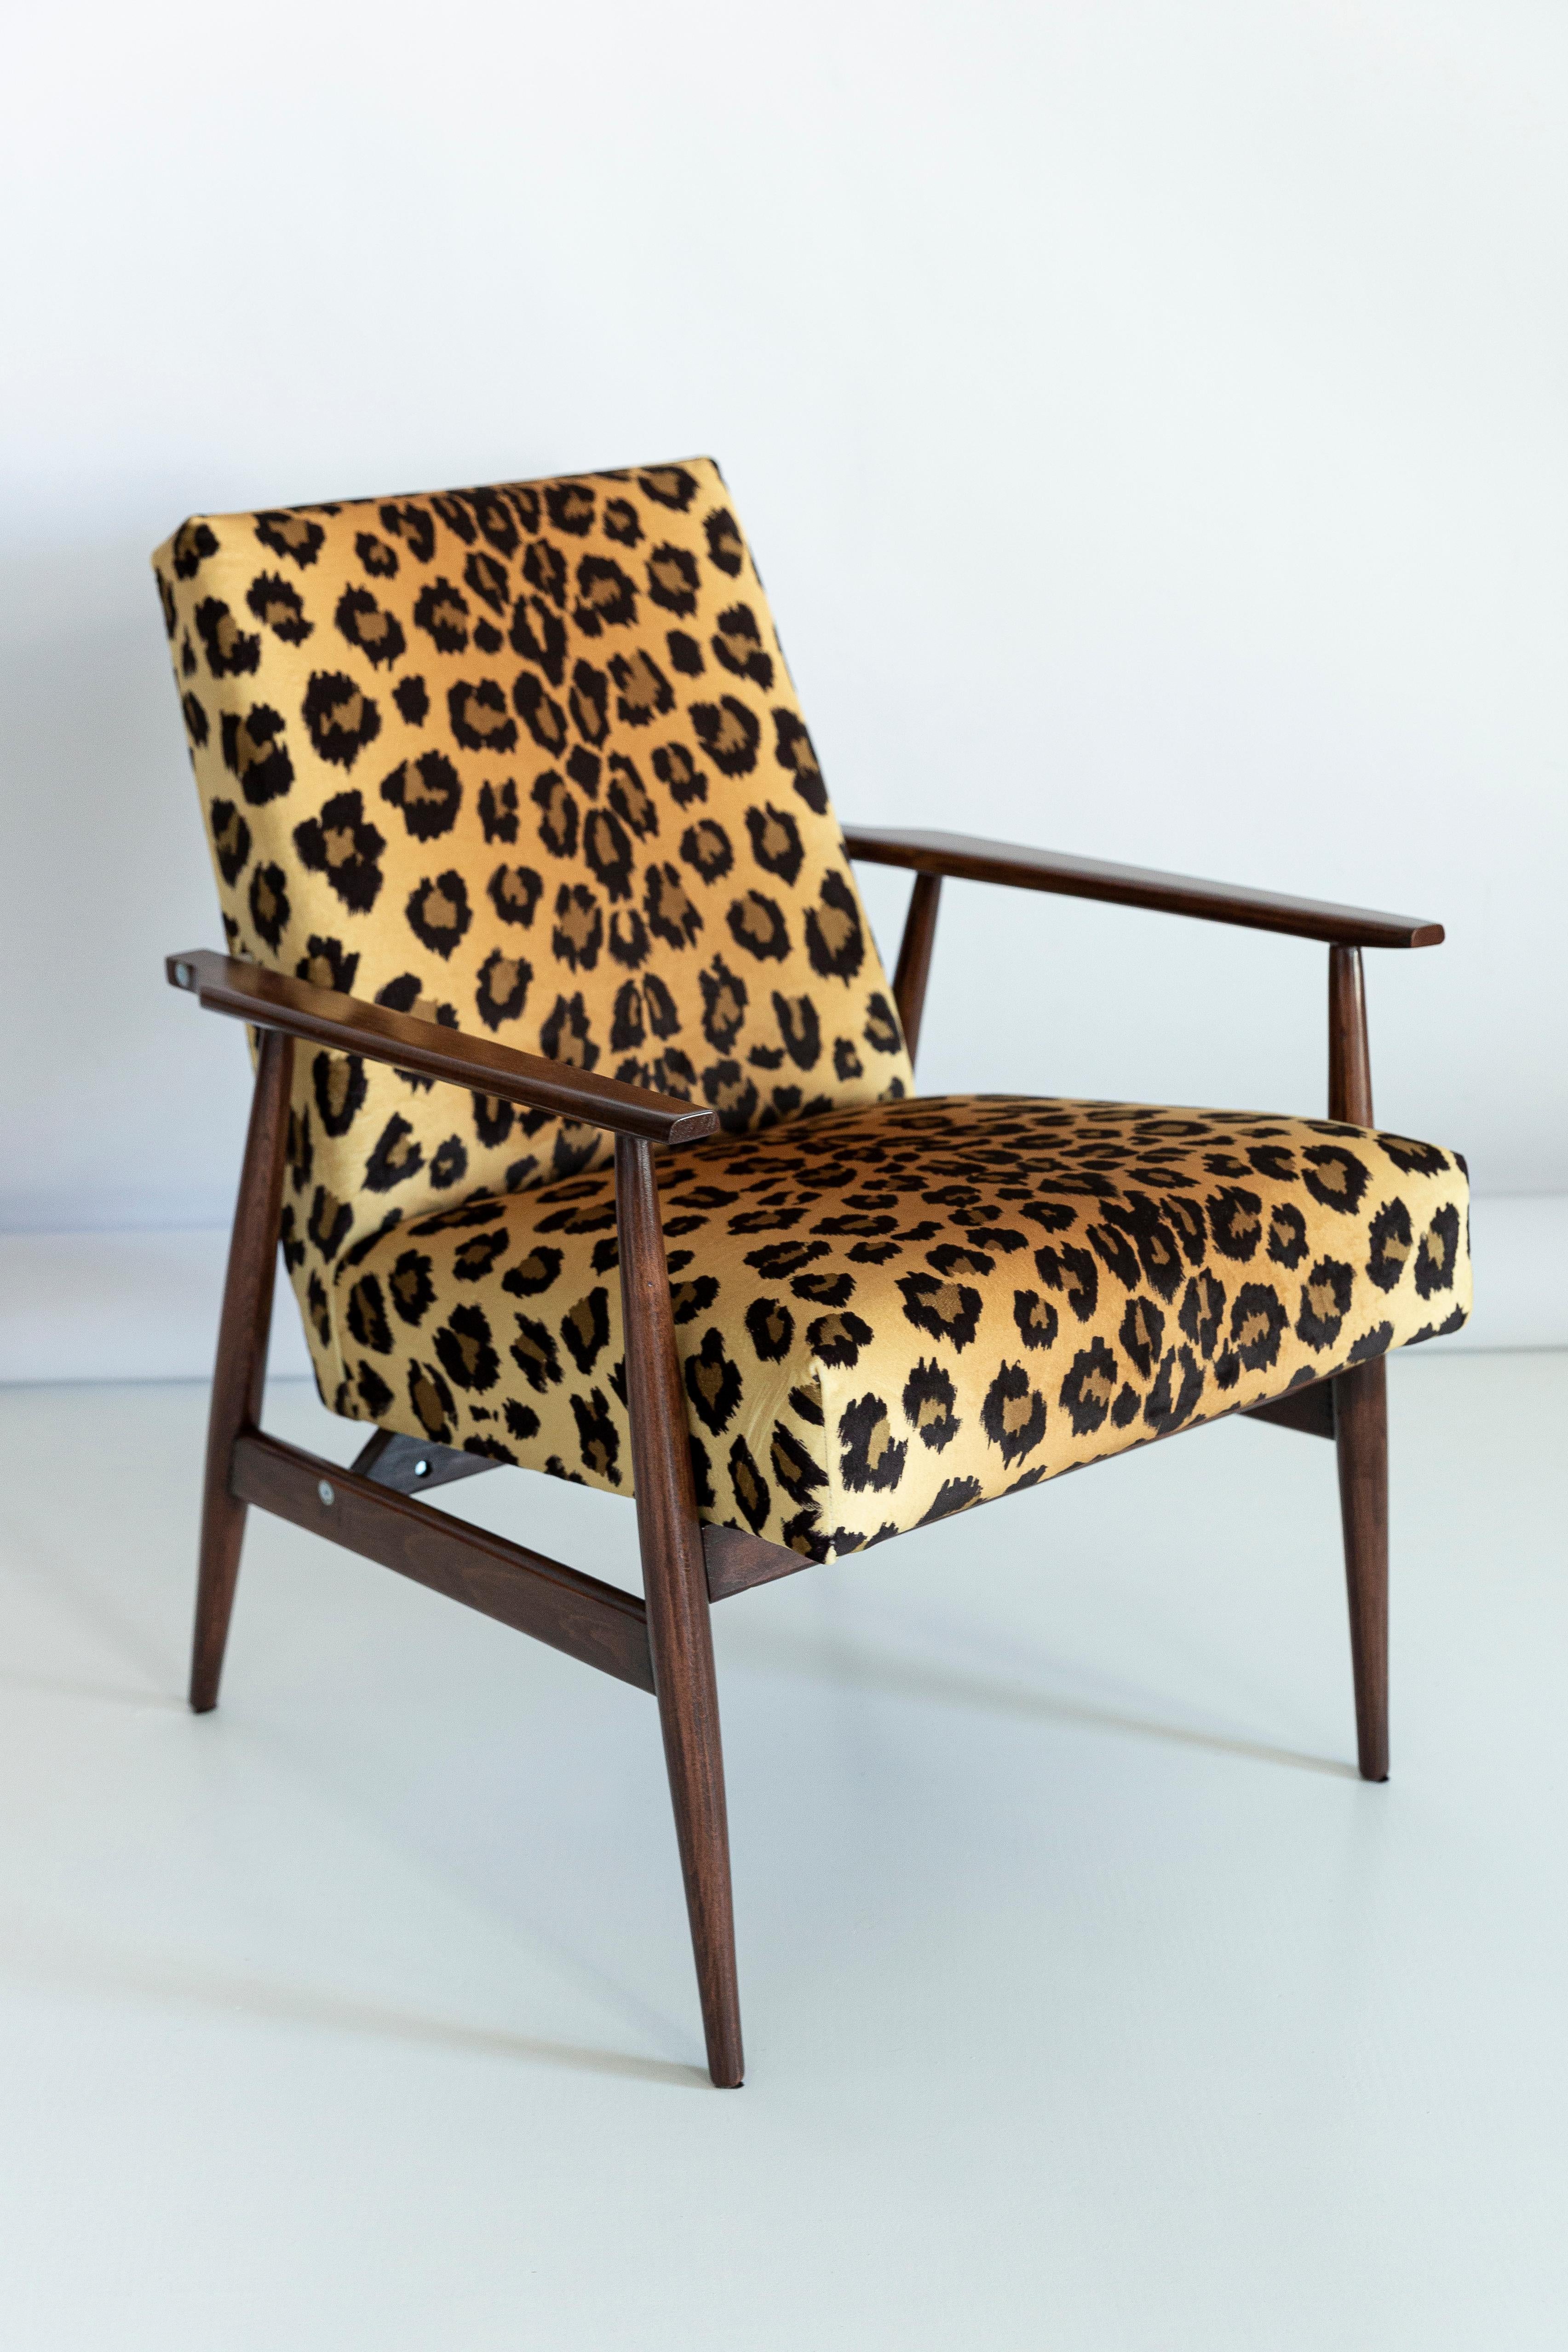 Ensemble de douze beaux fauteuils restaurés conçus par Henryk Lis. Meubles après une rénovation complète de la menuiserie et de la tapisserie. Le tissu, qui est recouvert d'un dossier et d'une assise, est un revêtement en velours italien de haute